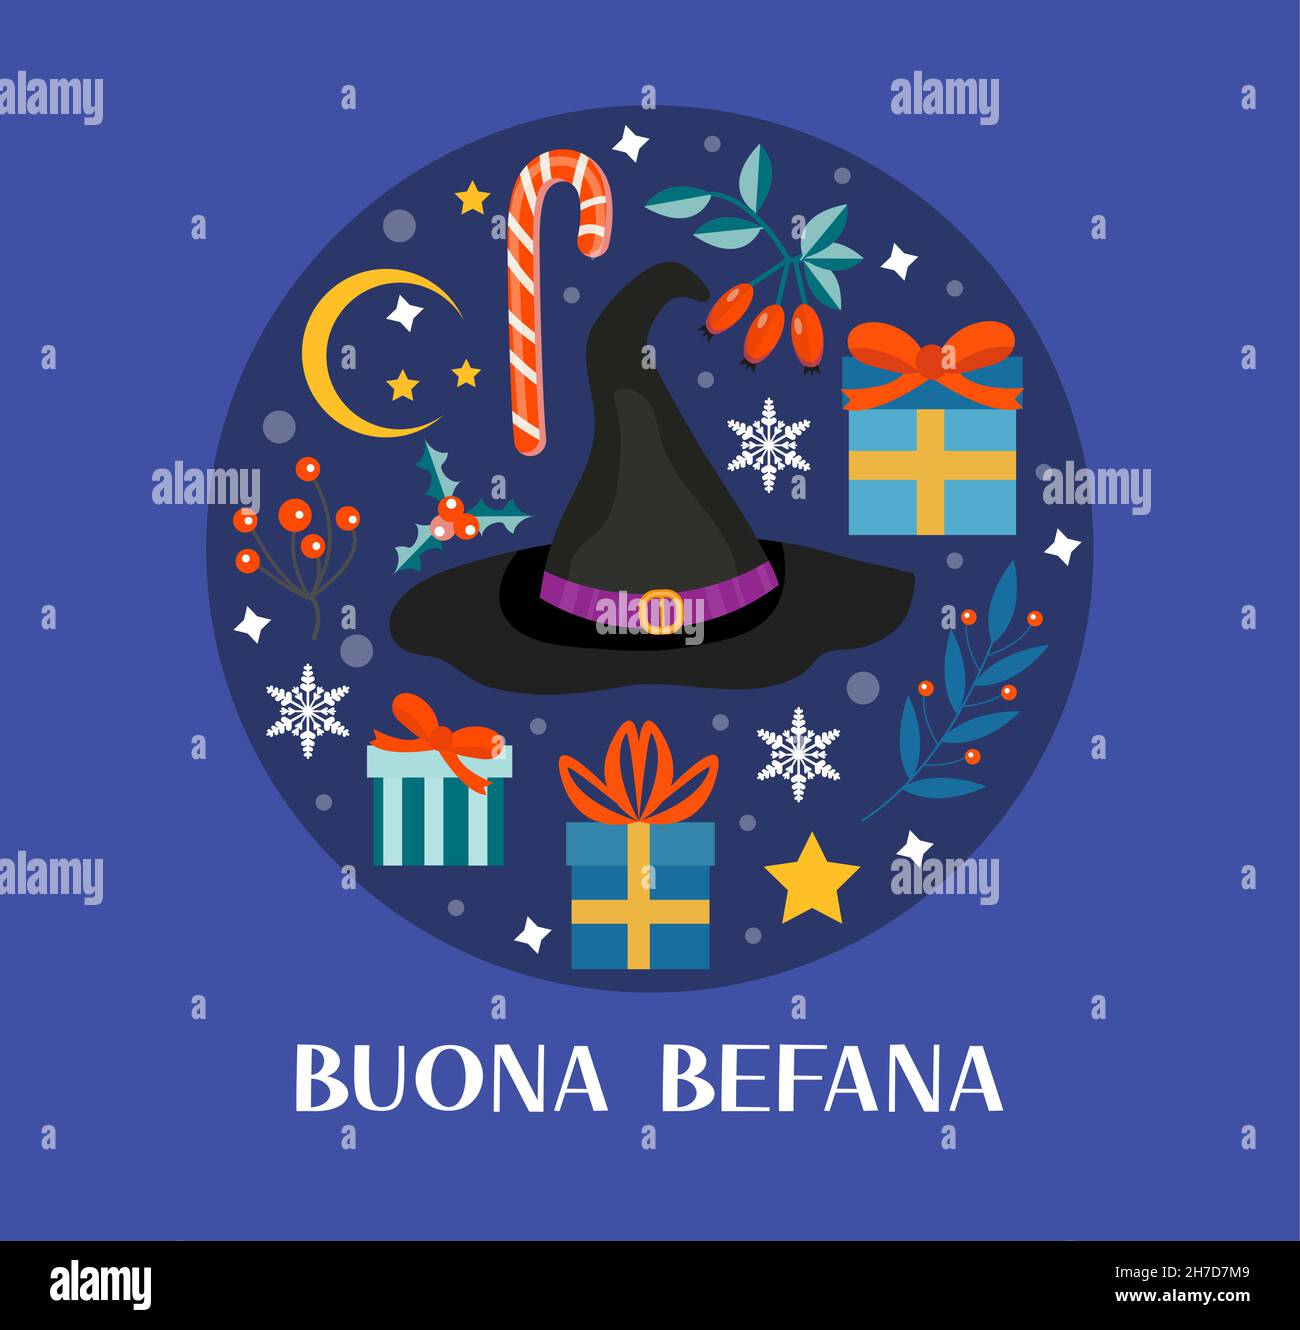 Italian Cultural & Community Center - Buona Befana! La Befana is